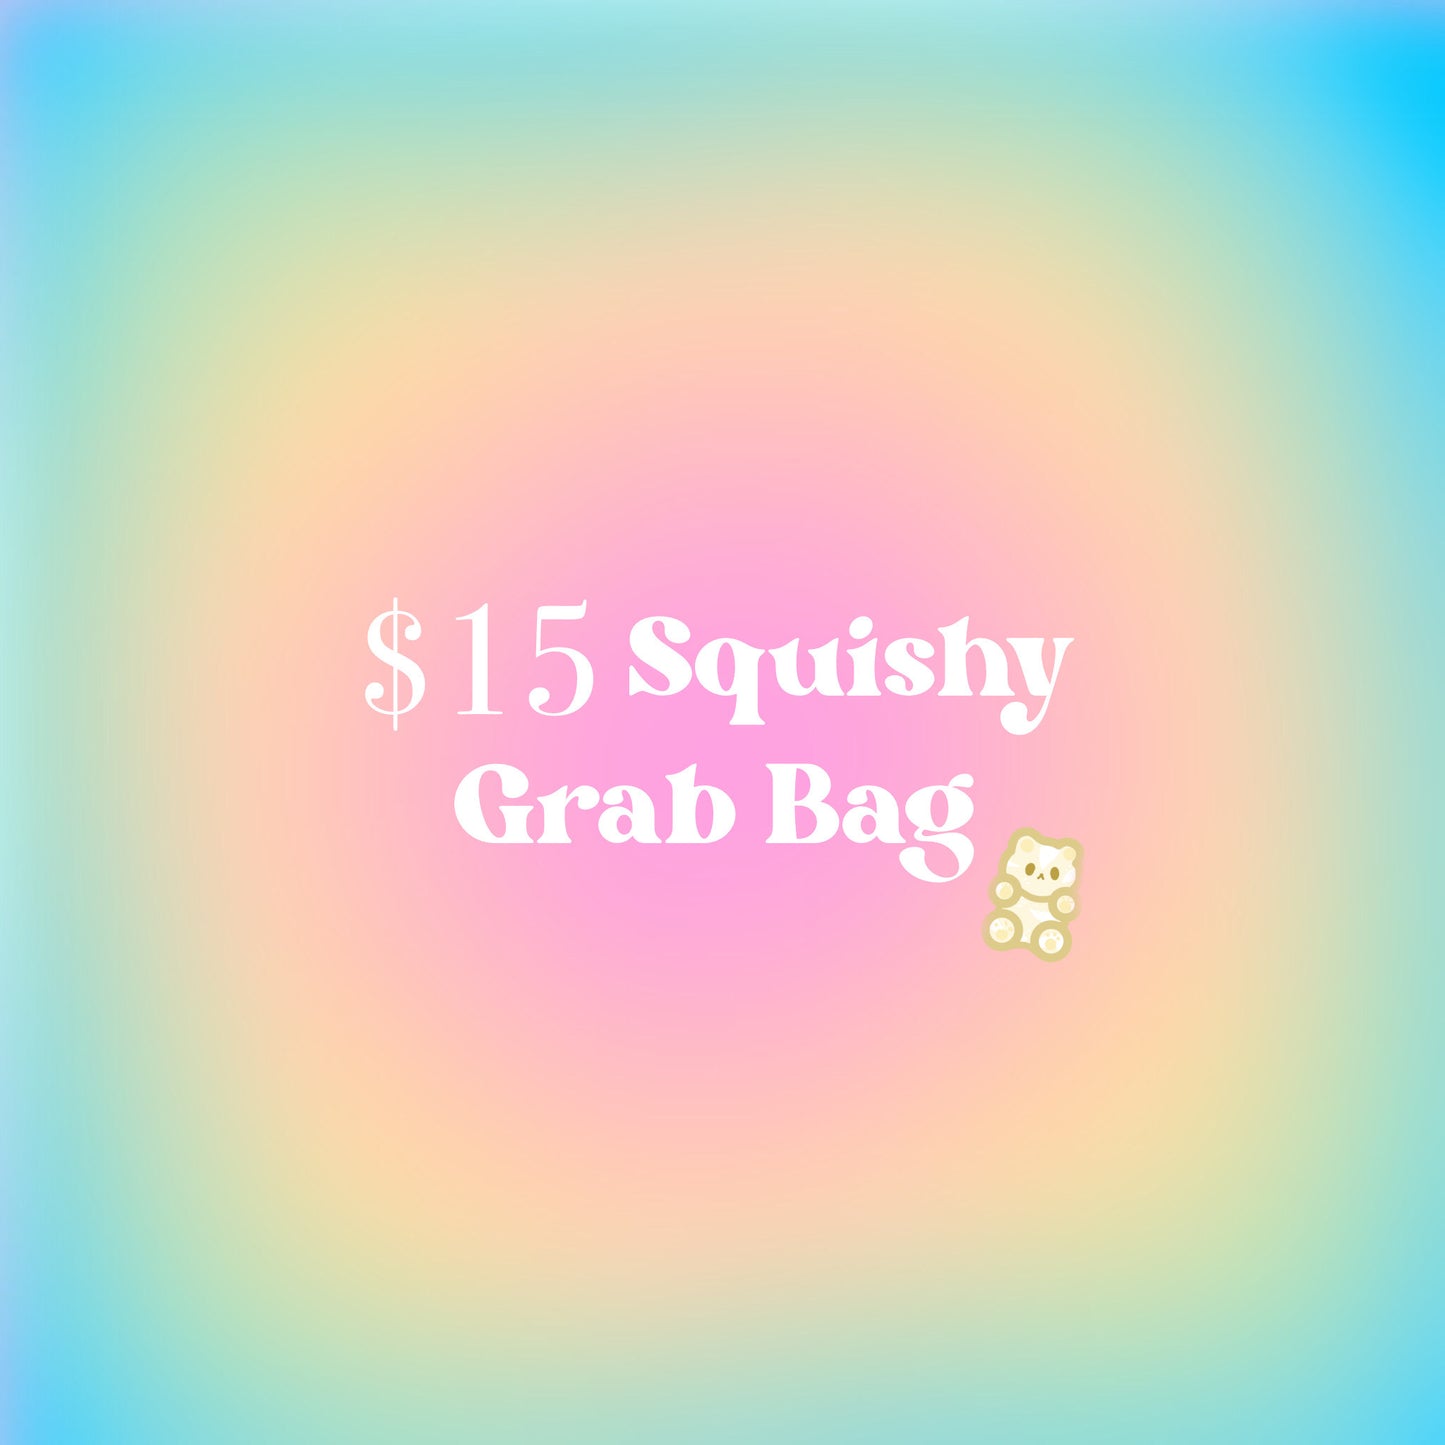 $15 Squishy Grab Bag